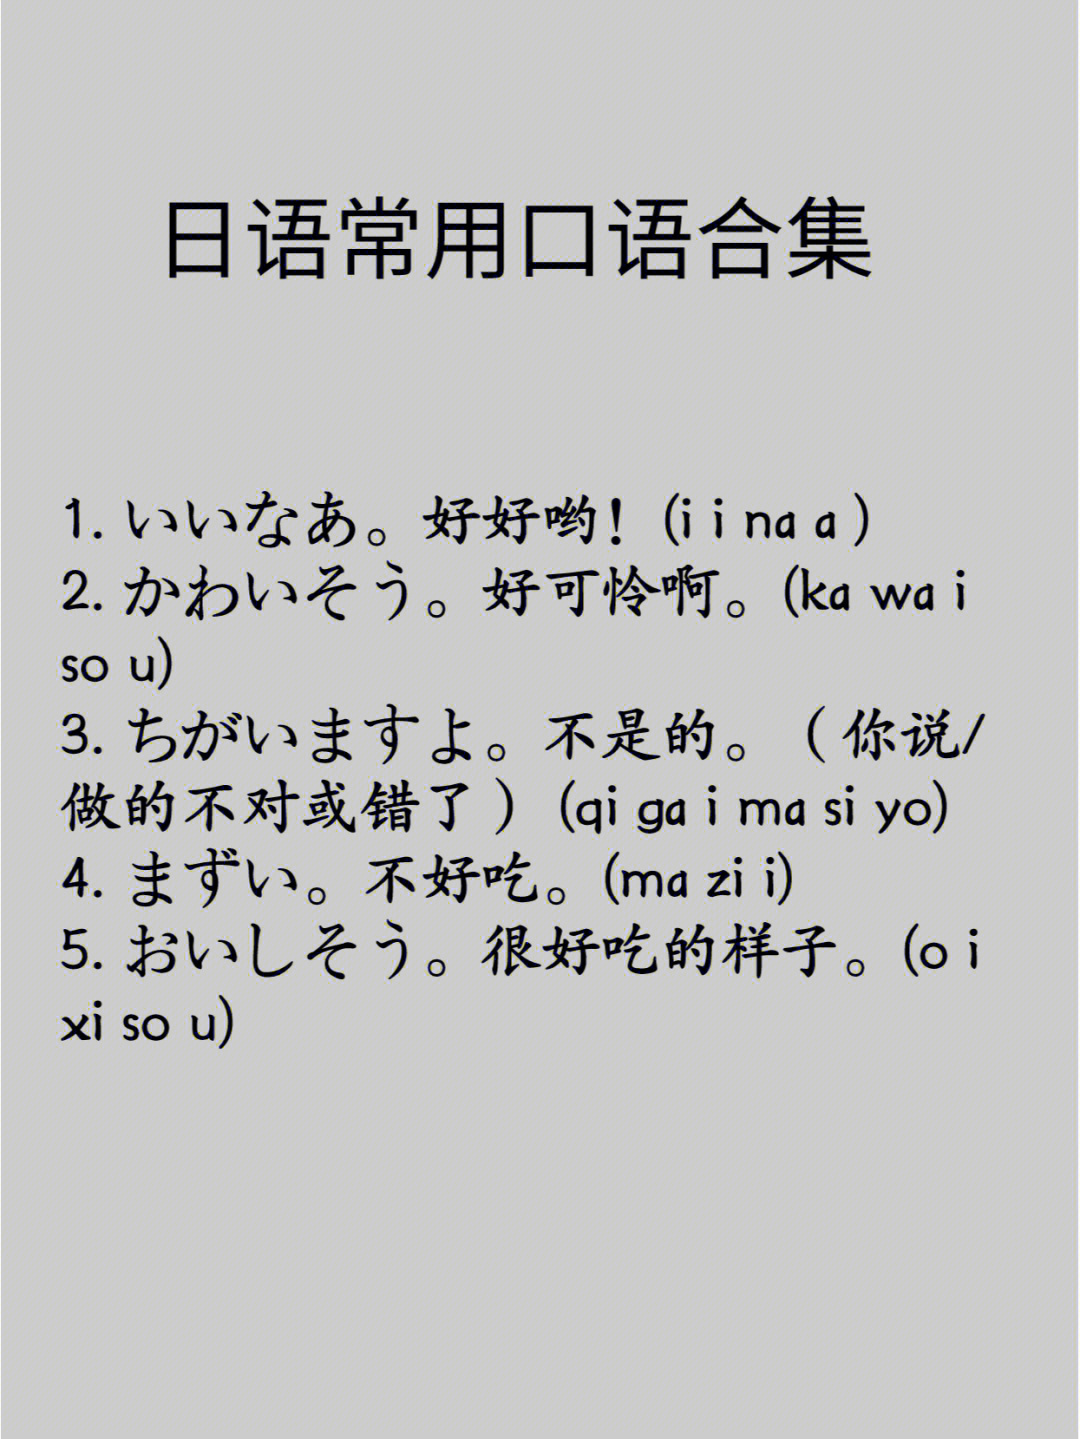 日语常用口语合集